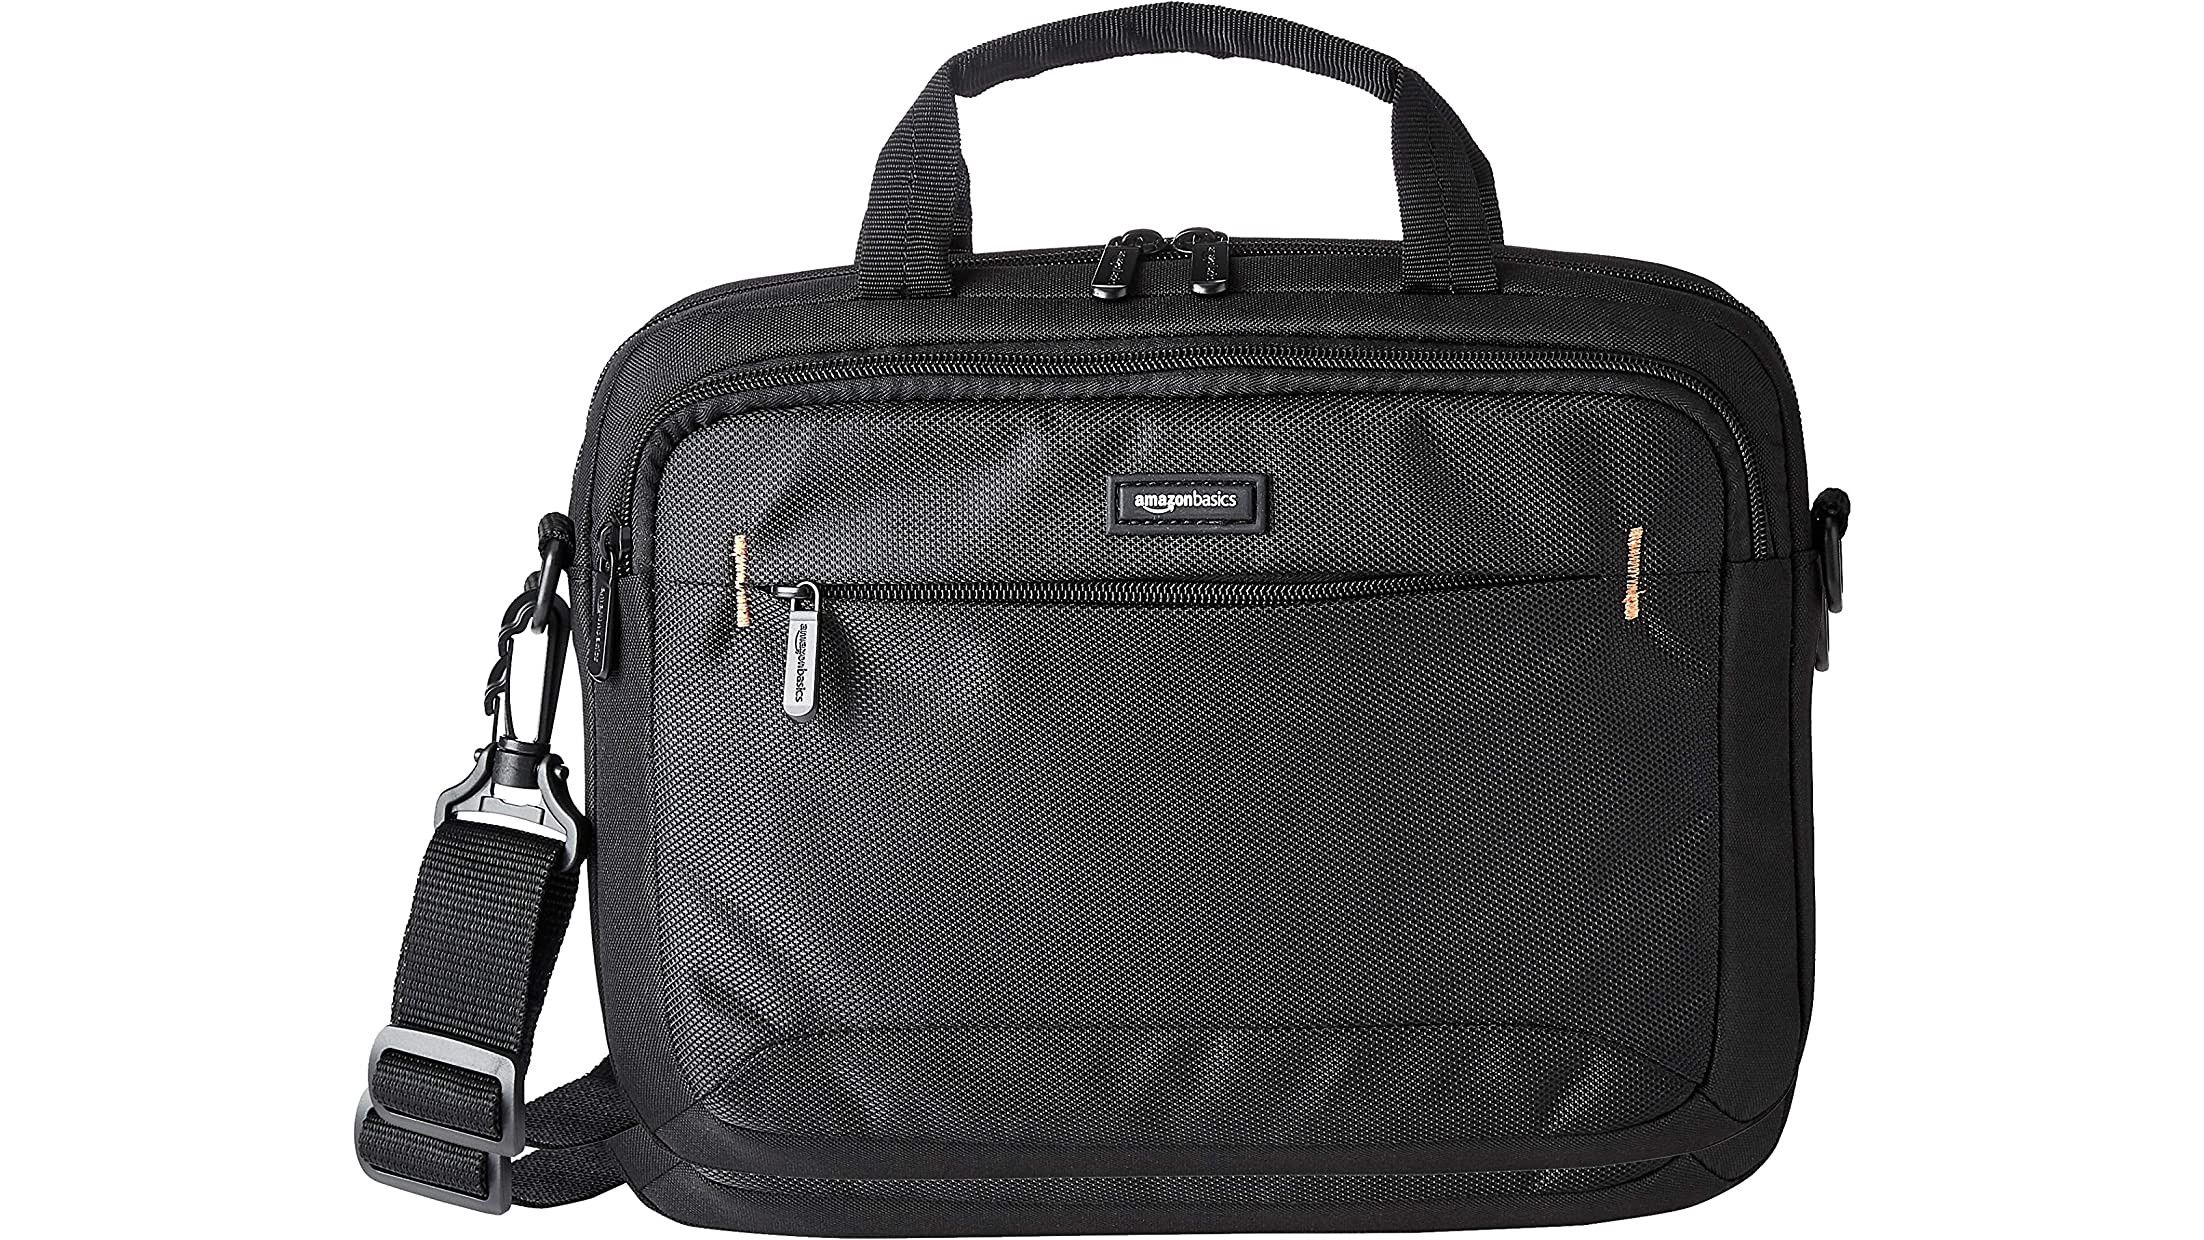 amazon-basics-laptop-shoulder-bag-render-01